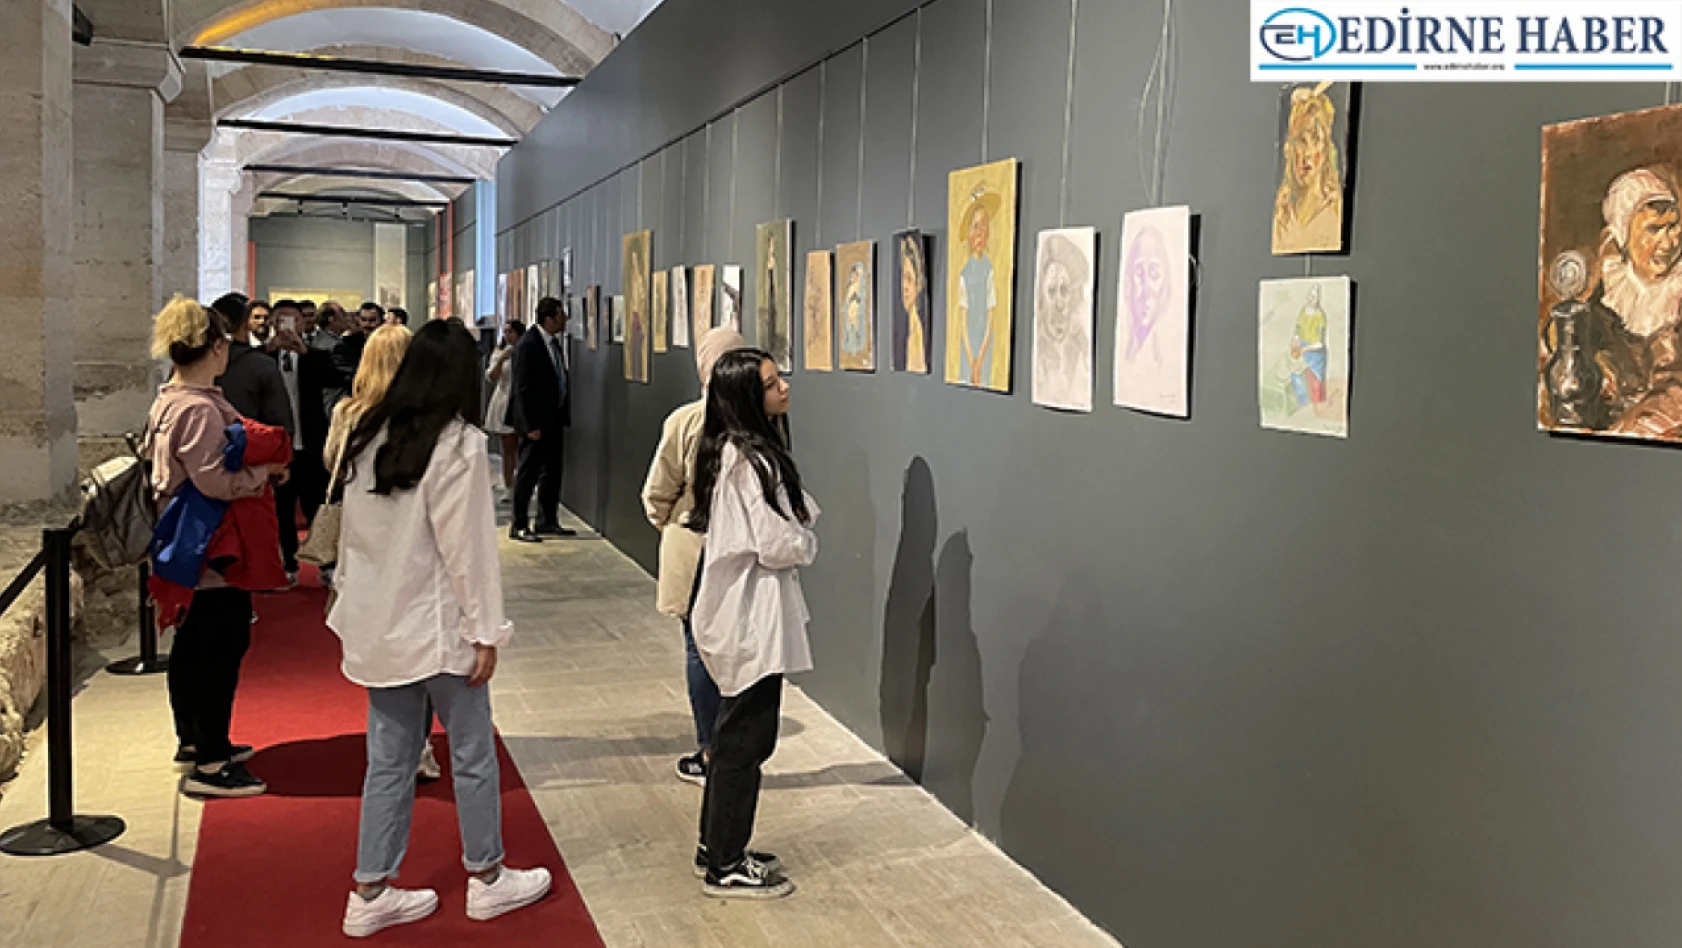 Edirne Gençlik Merkezi öğrencilerince hazırlanan resim sergisi sanatseverlerle buluştu